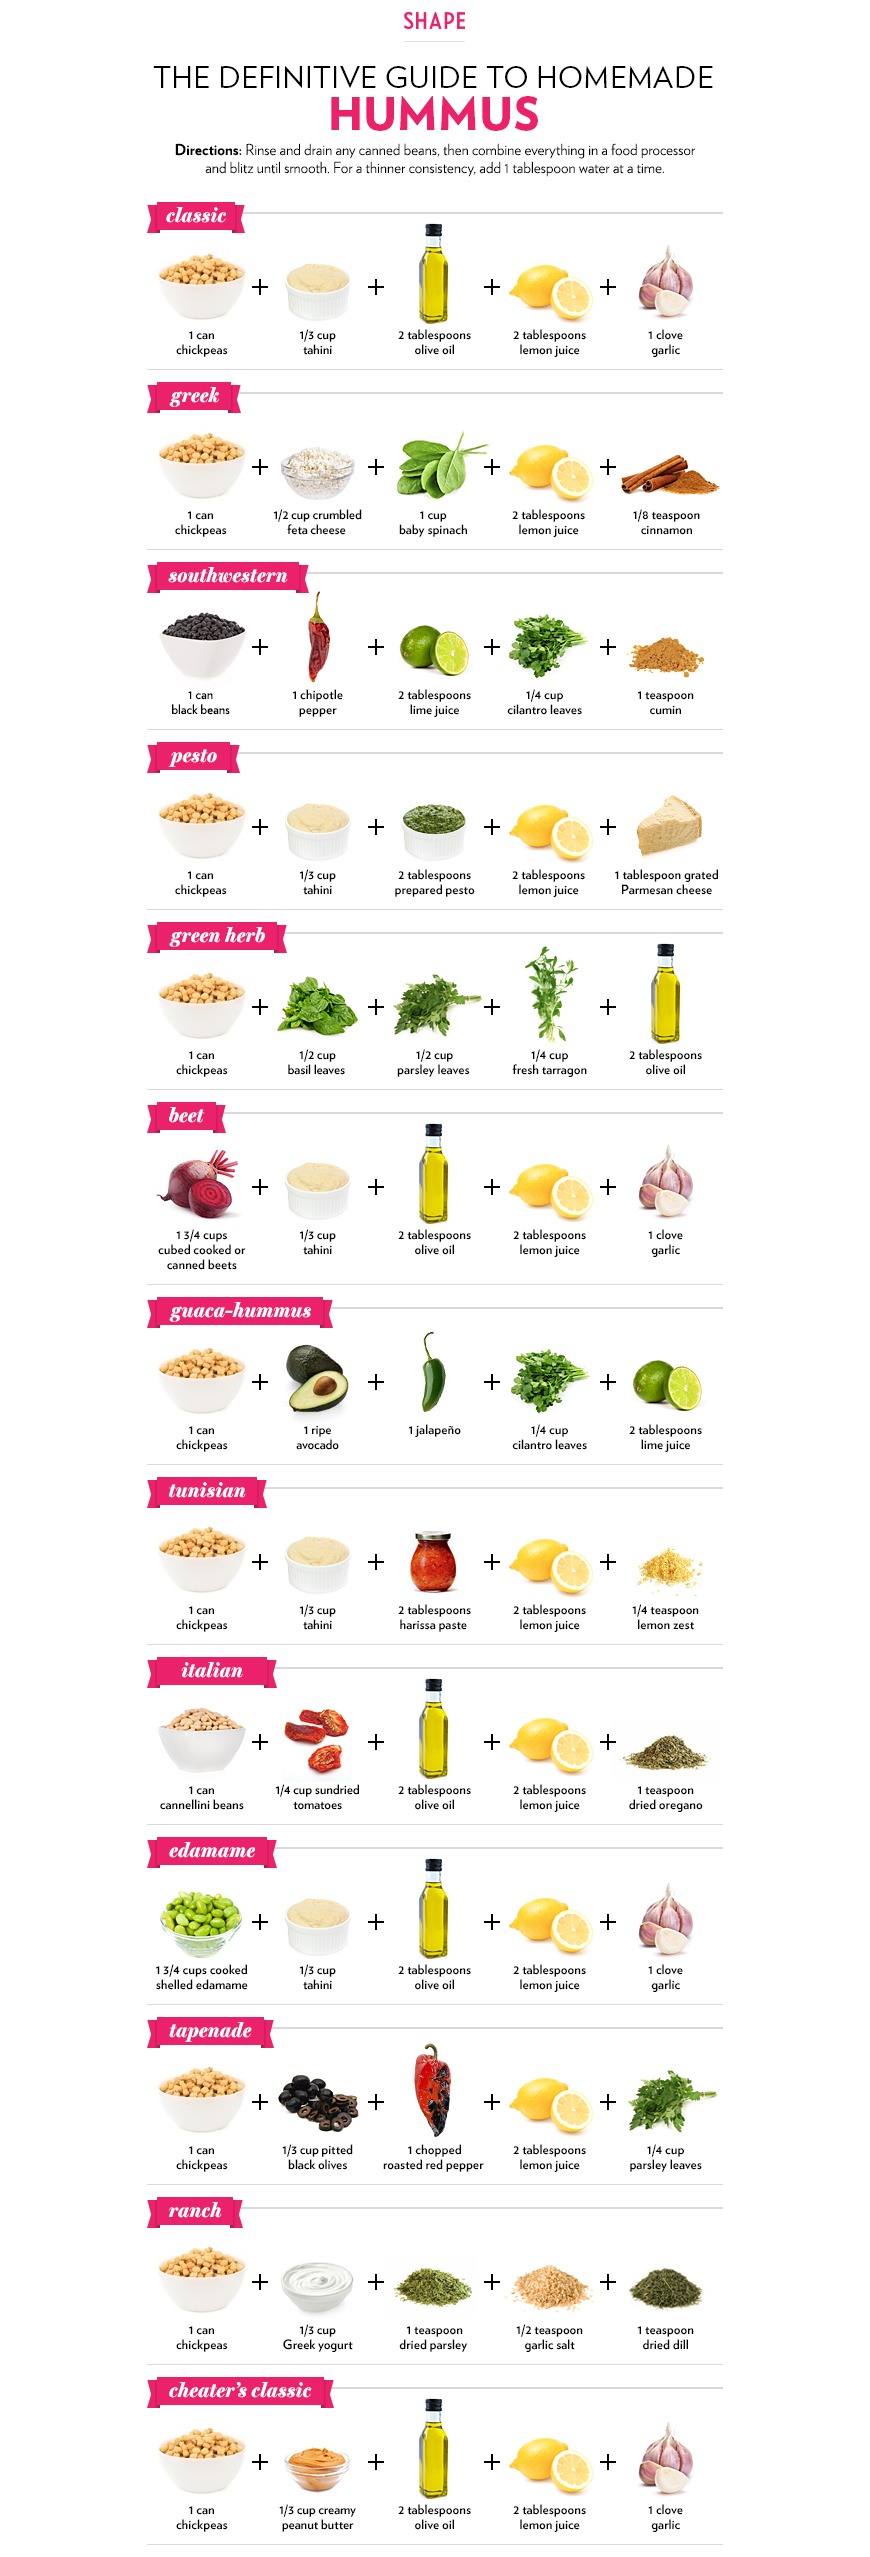 Ways to eat hummus